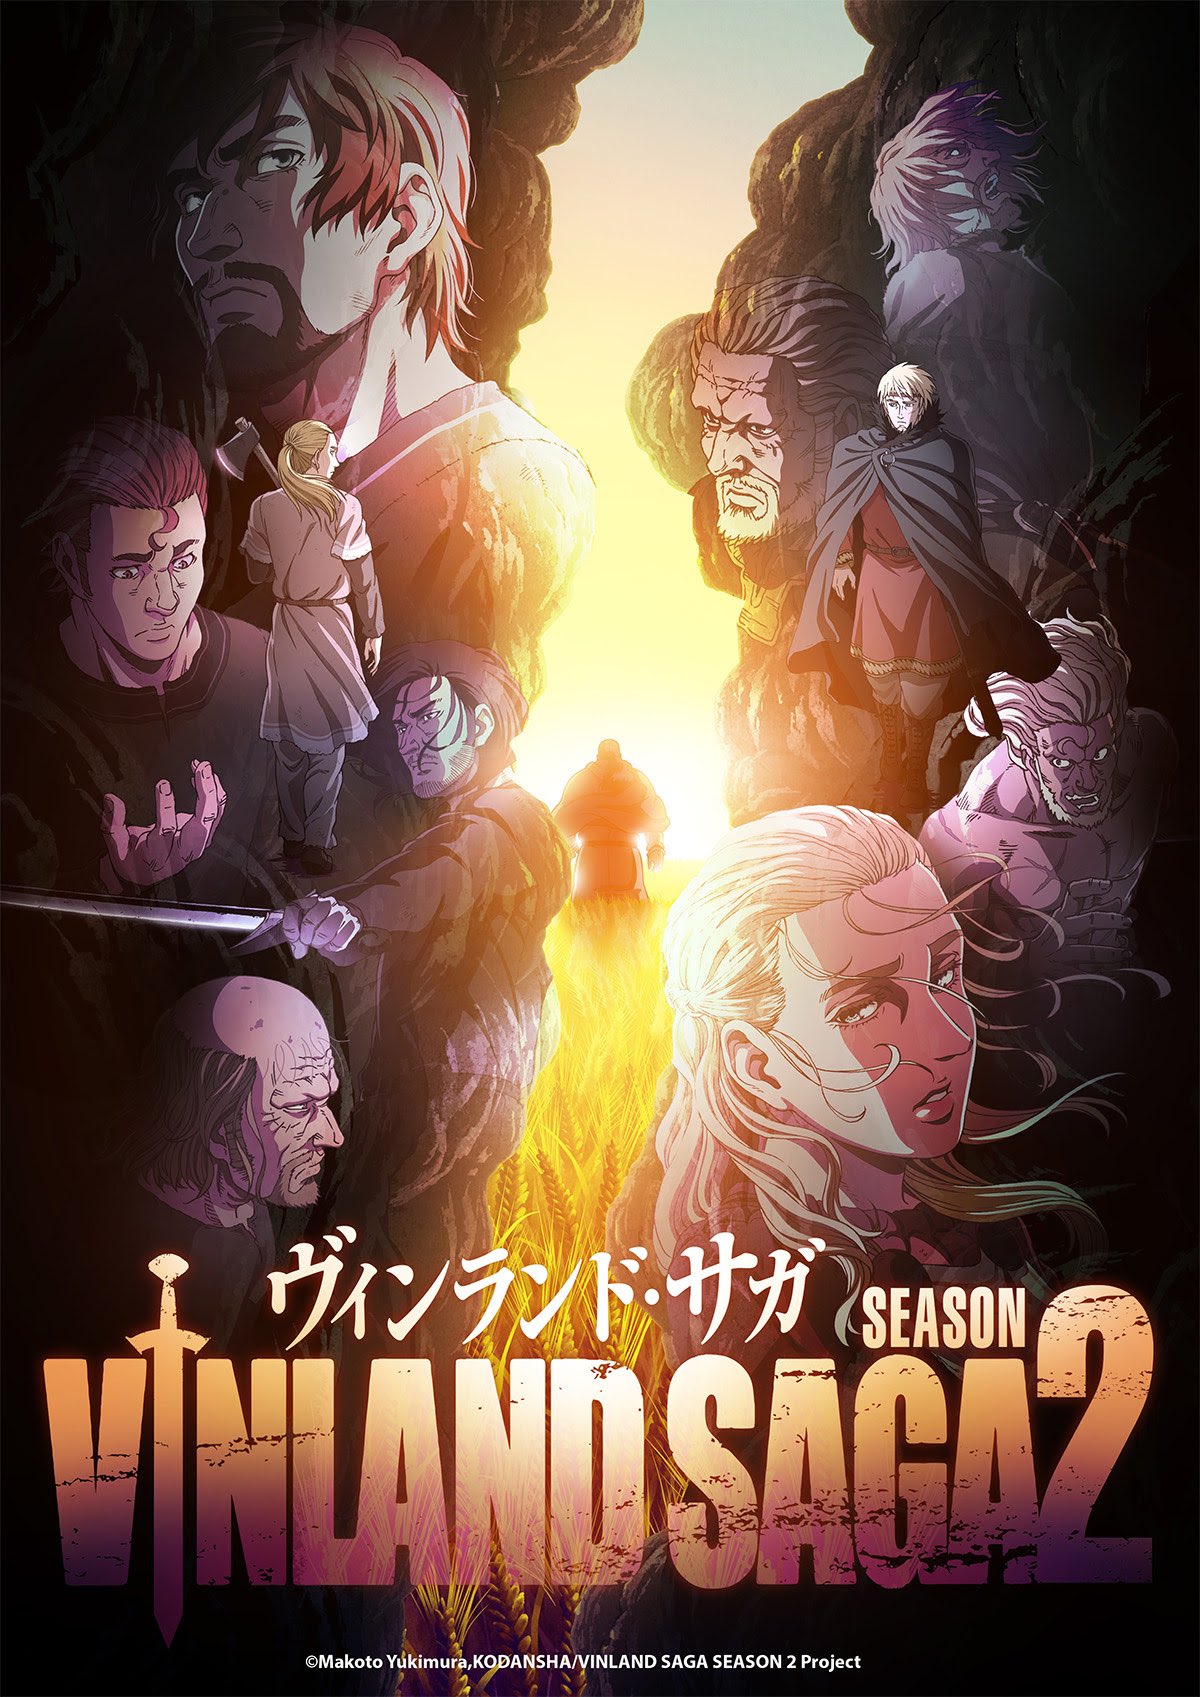 Portal Netflix BR  Fan Account on X: A 1° temporada do anime Vinland Saga  chega em 7 de julho na Netflix – e dublada!  / X